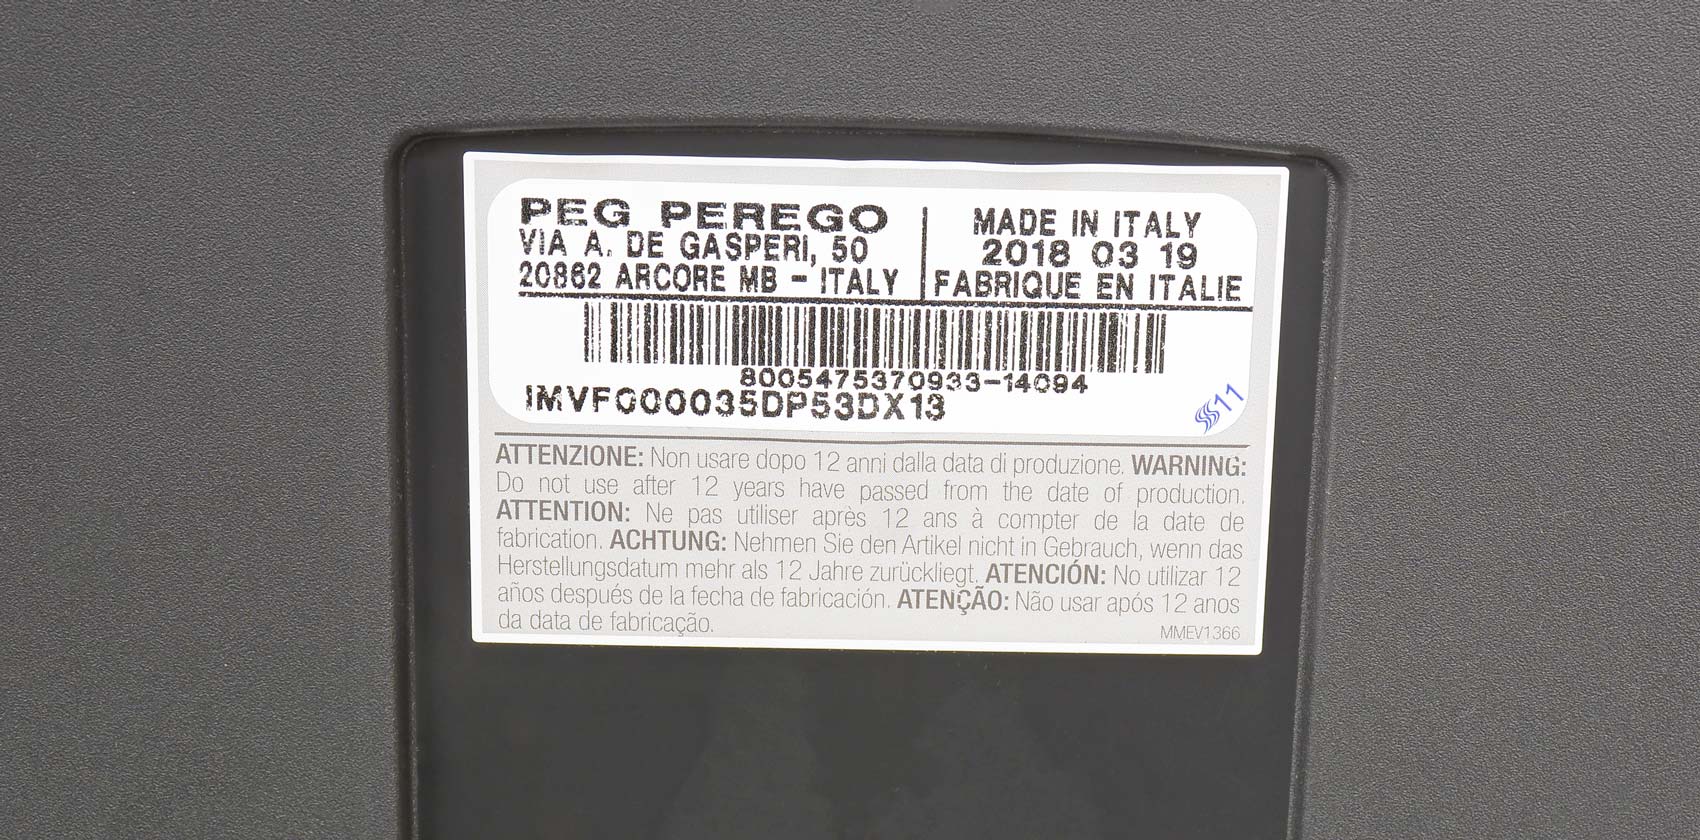 Peg-Perego Viaggio 2-3 Flex серийный номер автокресла